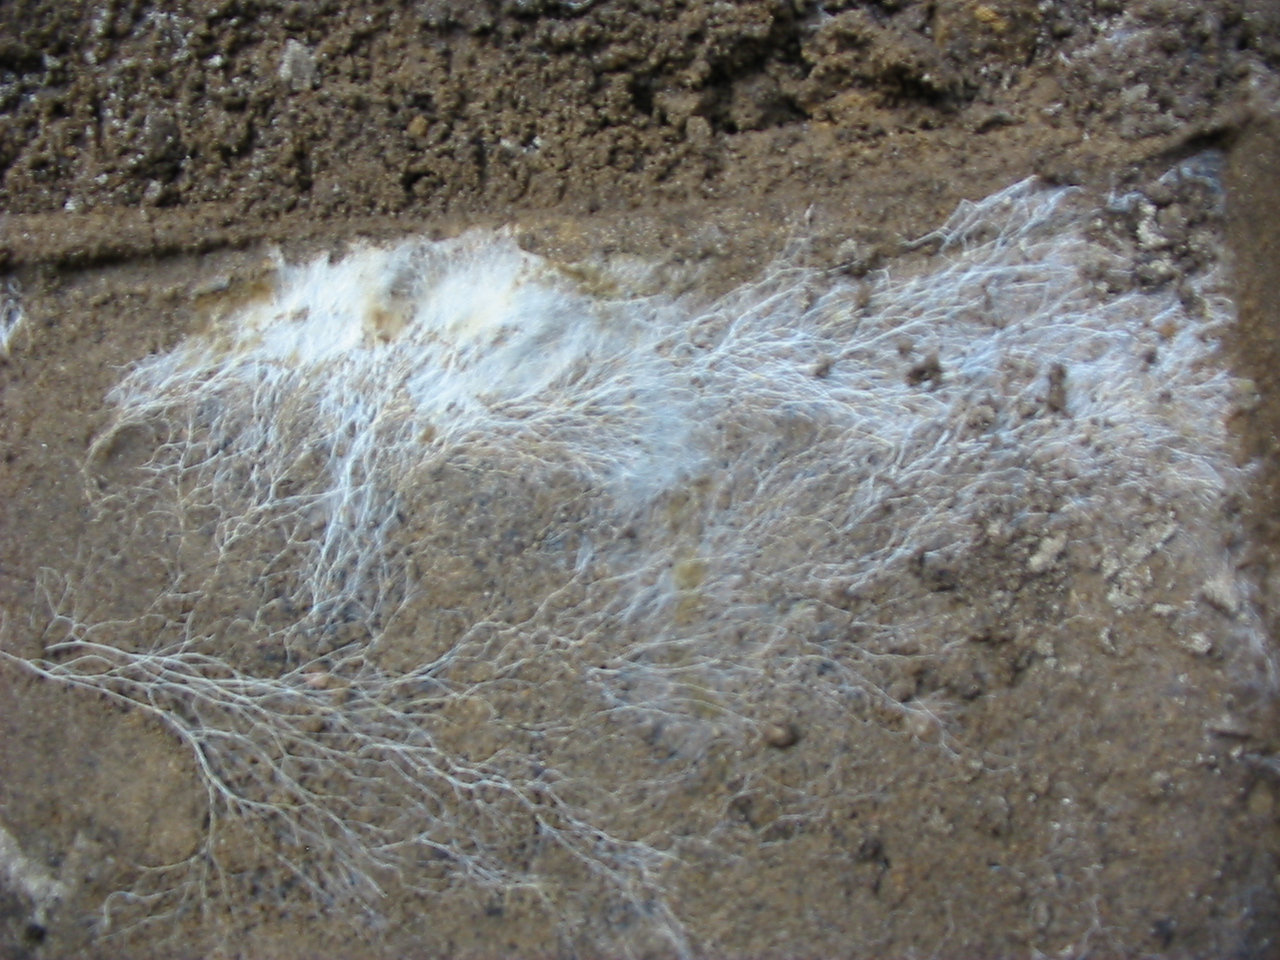 De verzameling van zwamdraden wordt mycelium genoemd. Foto gemaakt door Lex vB en valt onder de Creative Commons licentie